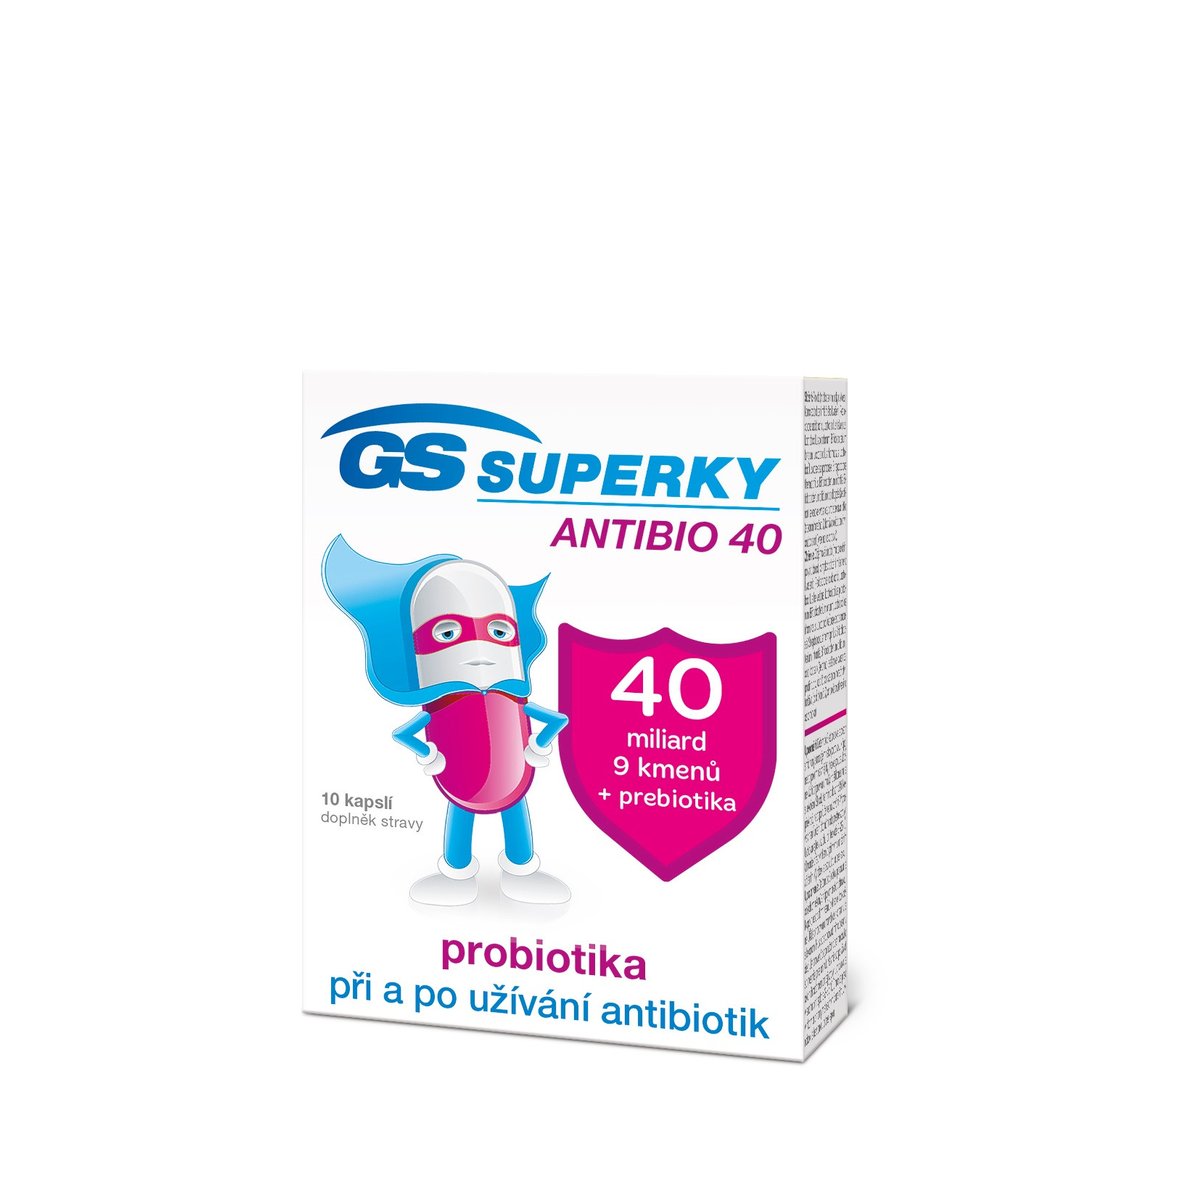 GS Superky Antibio 40 cps.10